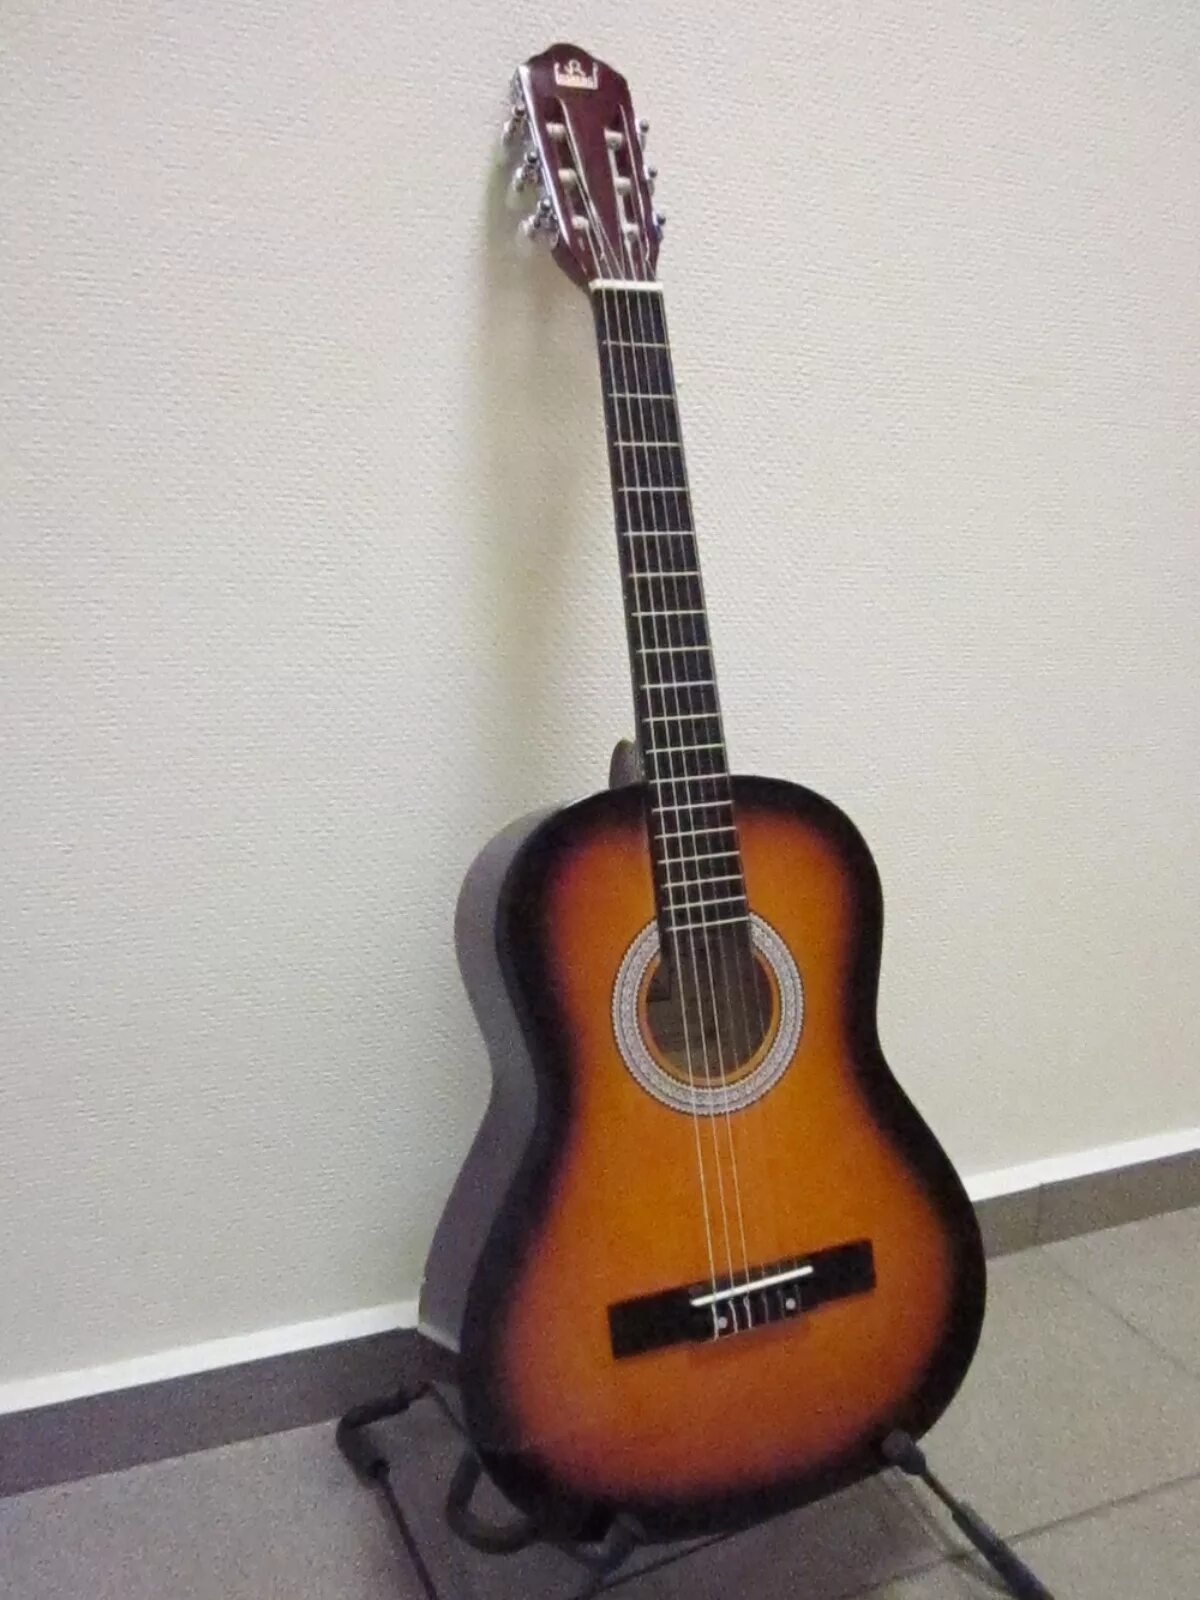 Купить гитару в новгороде. Классическая гитара цвет санберст. Newart GC- SB 20 - гитара классическая 3/4 дюйма. Гитара Geso BC-b3.